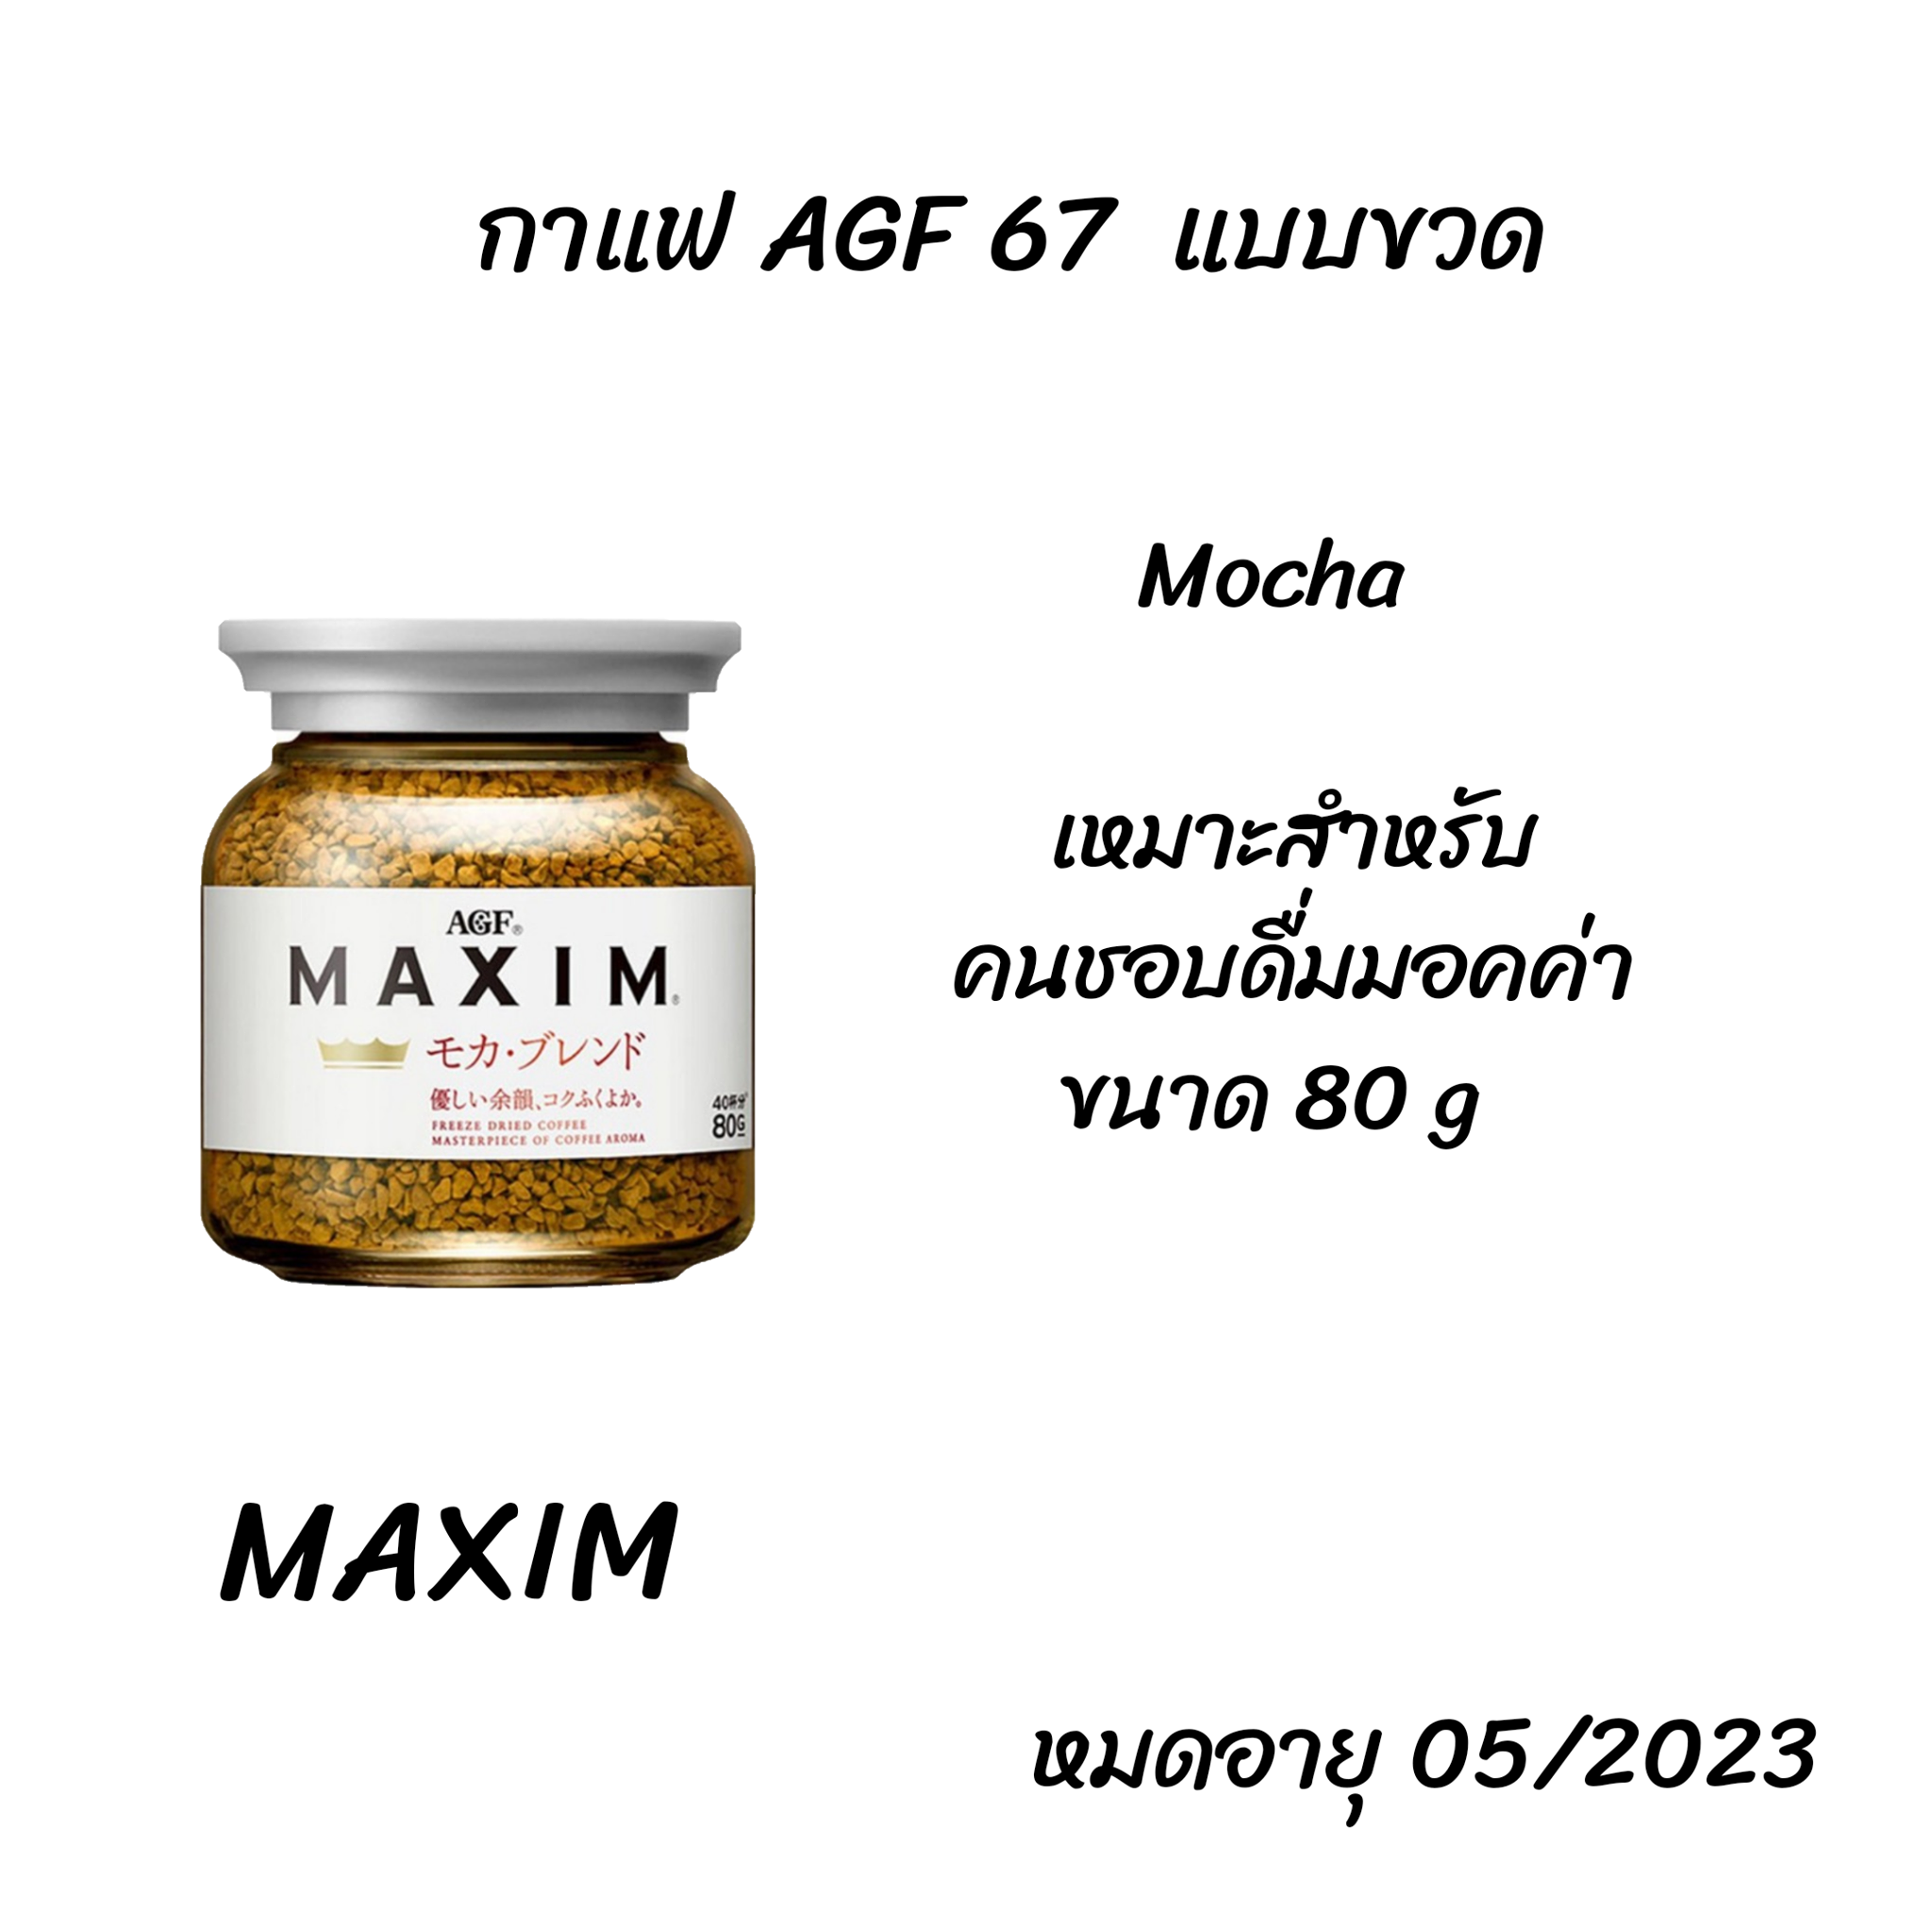 Maxim Mocha Coffee กาแฟดำแท้ กาแฟแม็กซิม กาแฟพร้อมชง กาแฟคั่วบด ผสมม็อคค่า ถุงสีขาว กาแฟญี่ปุ่น ขนาด 80 g แบบขวด